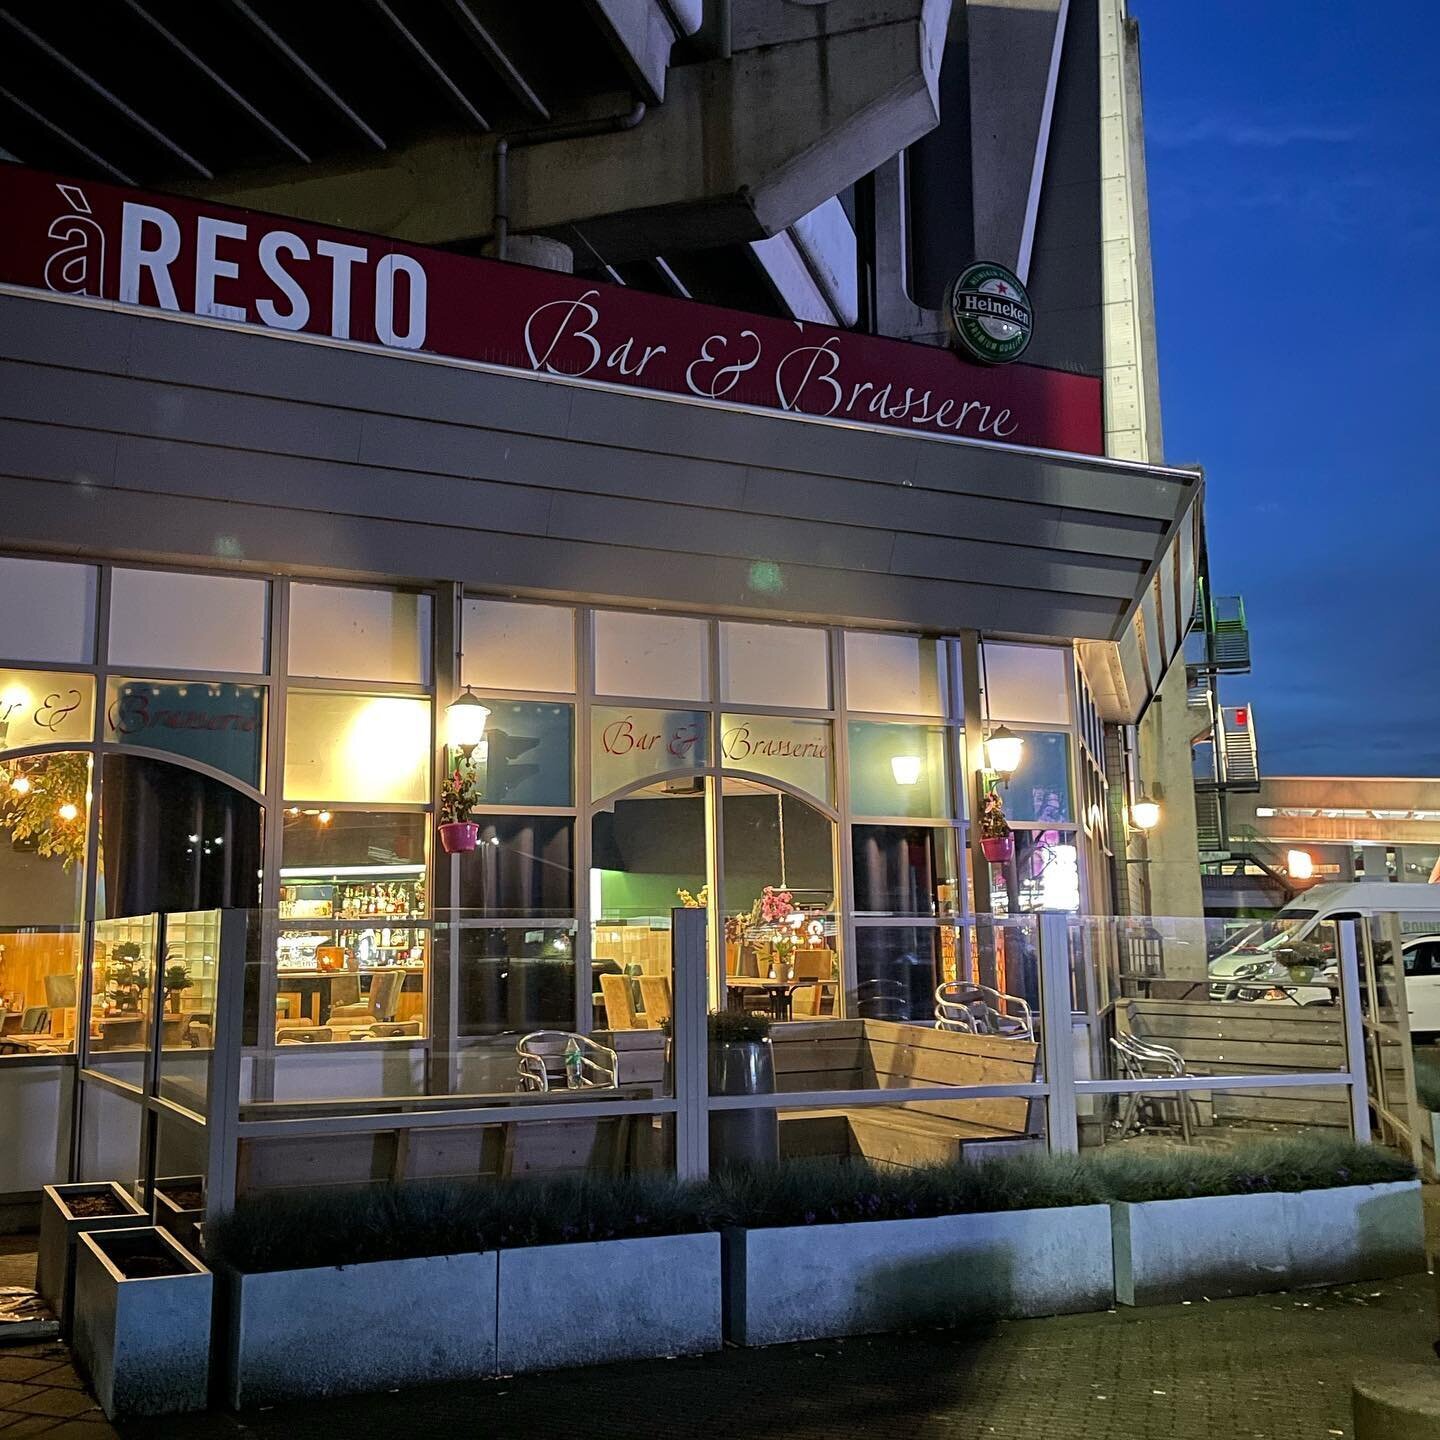 aResto Bar & Brasserie